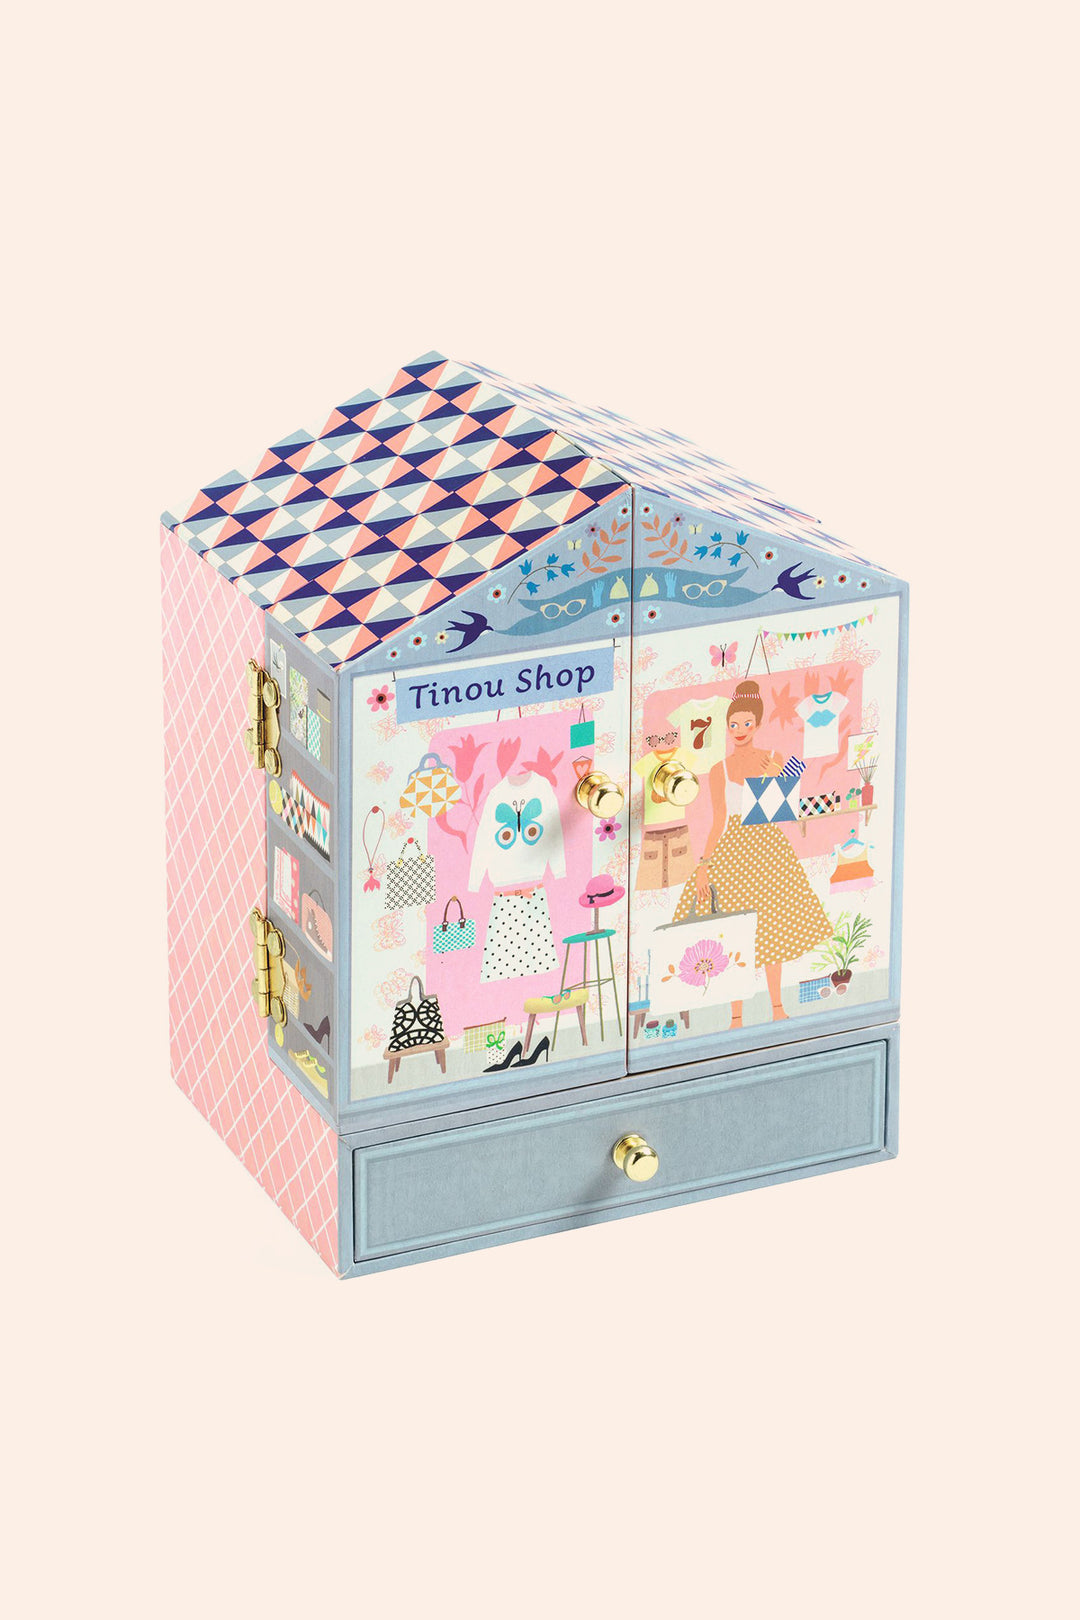 Tinou Shop - Musical Box